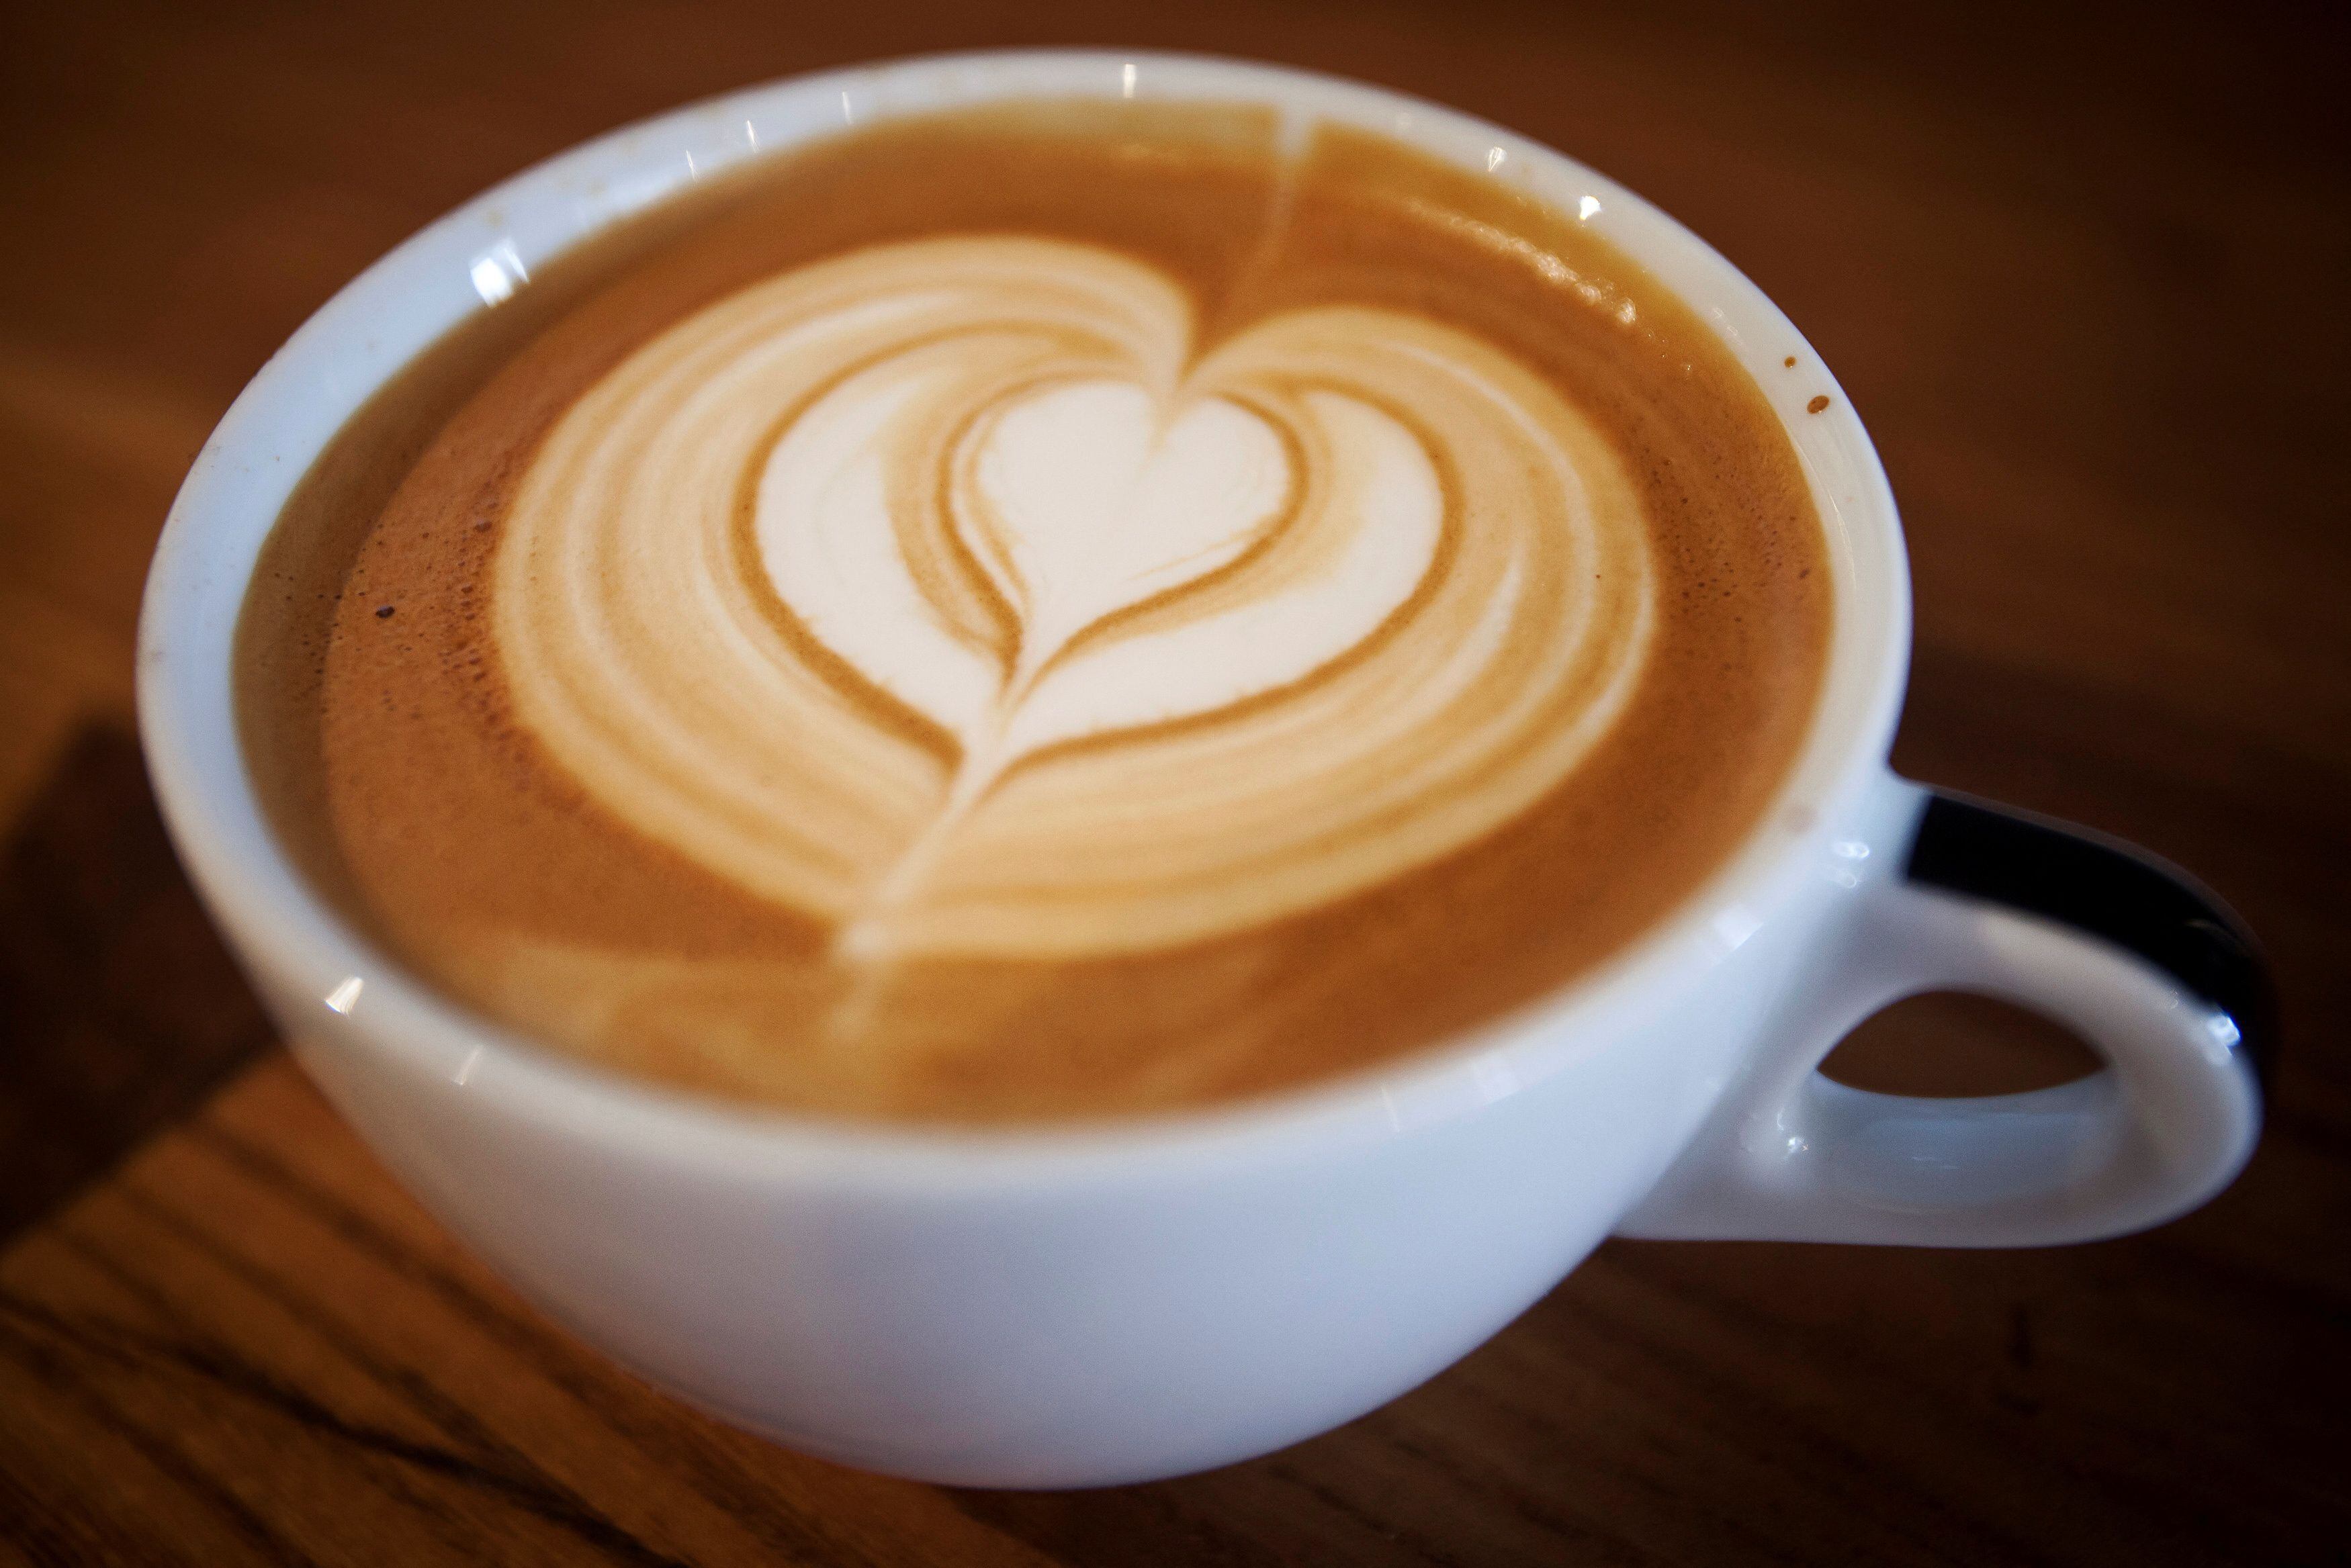 El cappuccino es una de las bebidas a base de café con mayor popularidad. (REUTERS/Carlo Allegri)